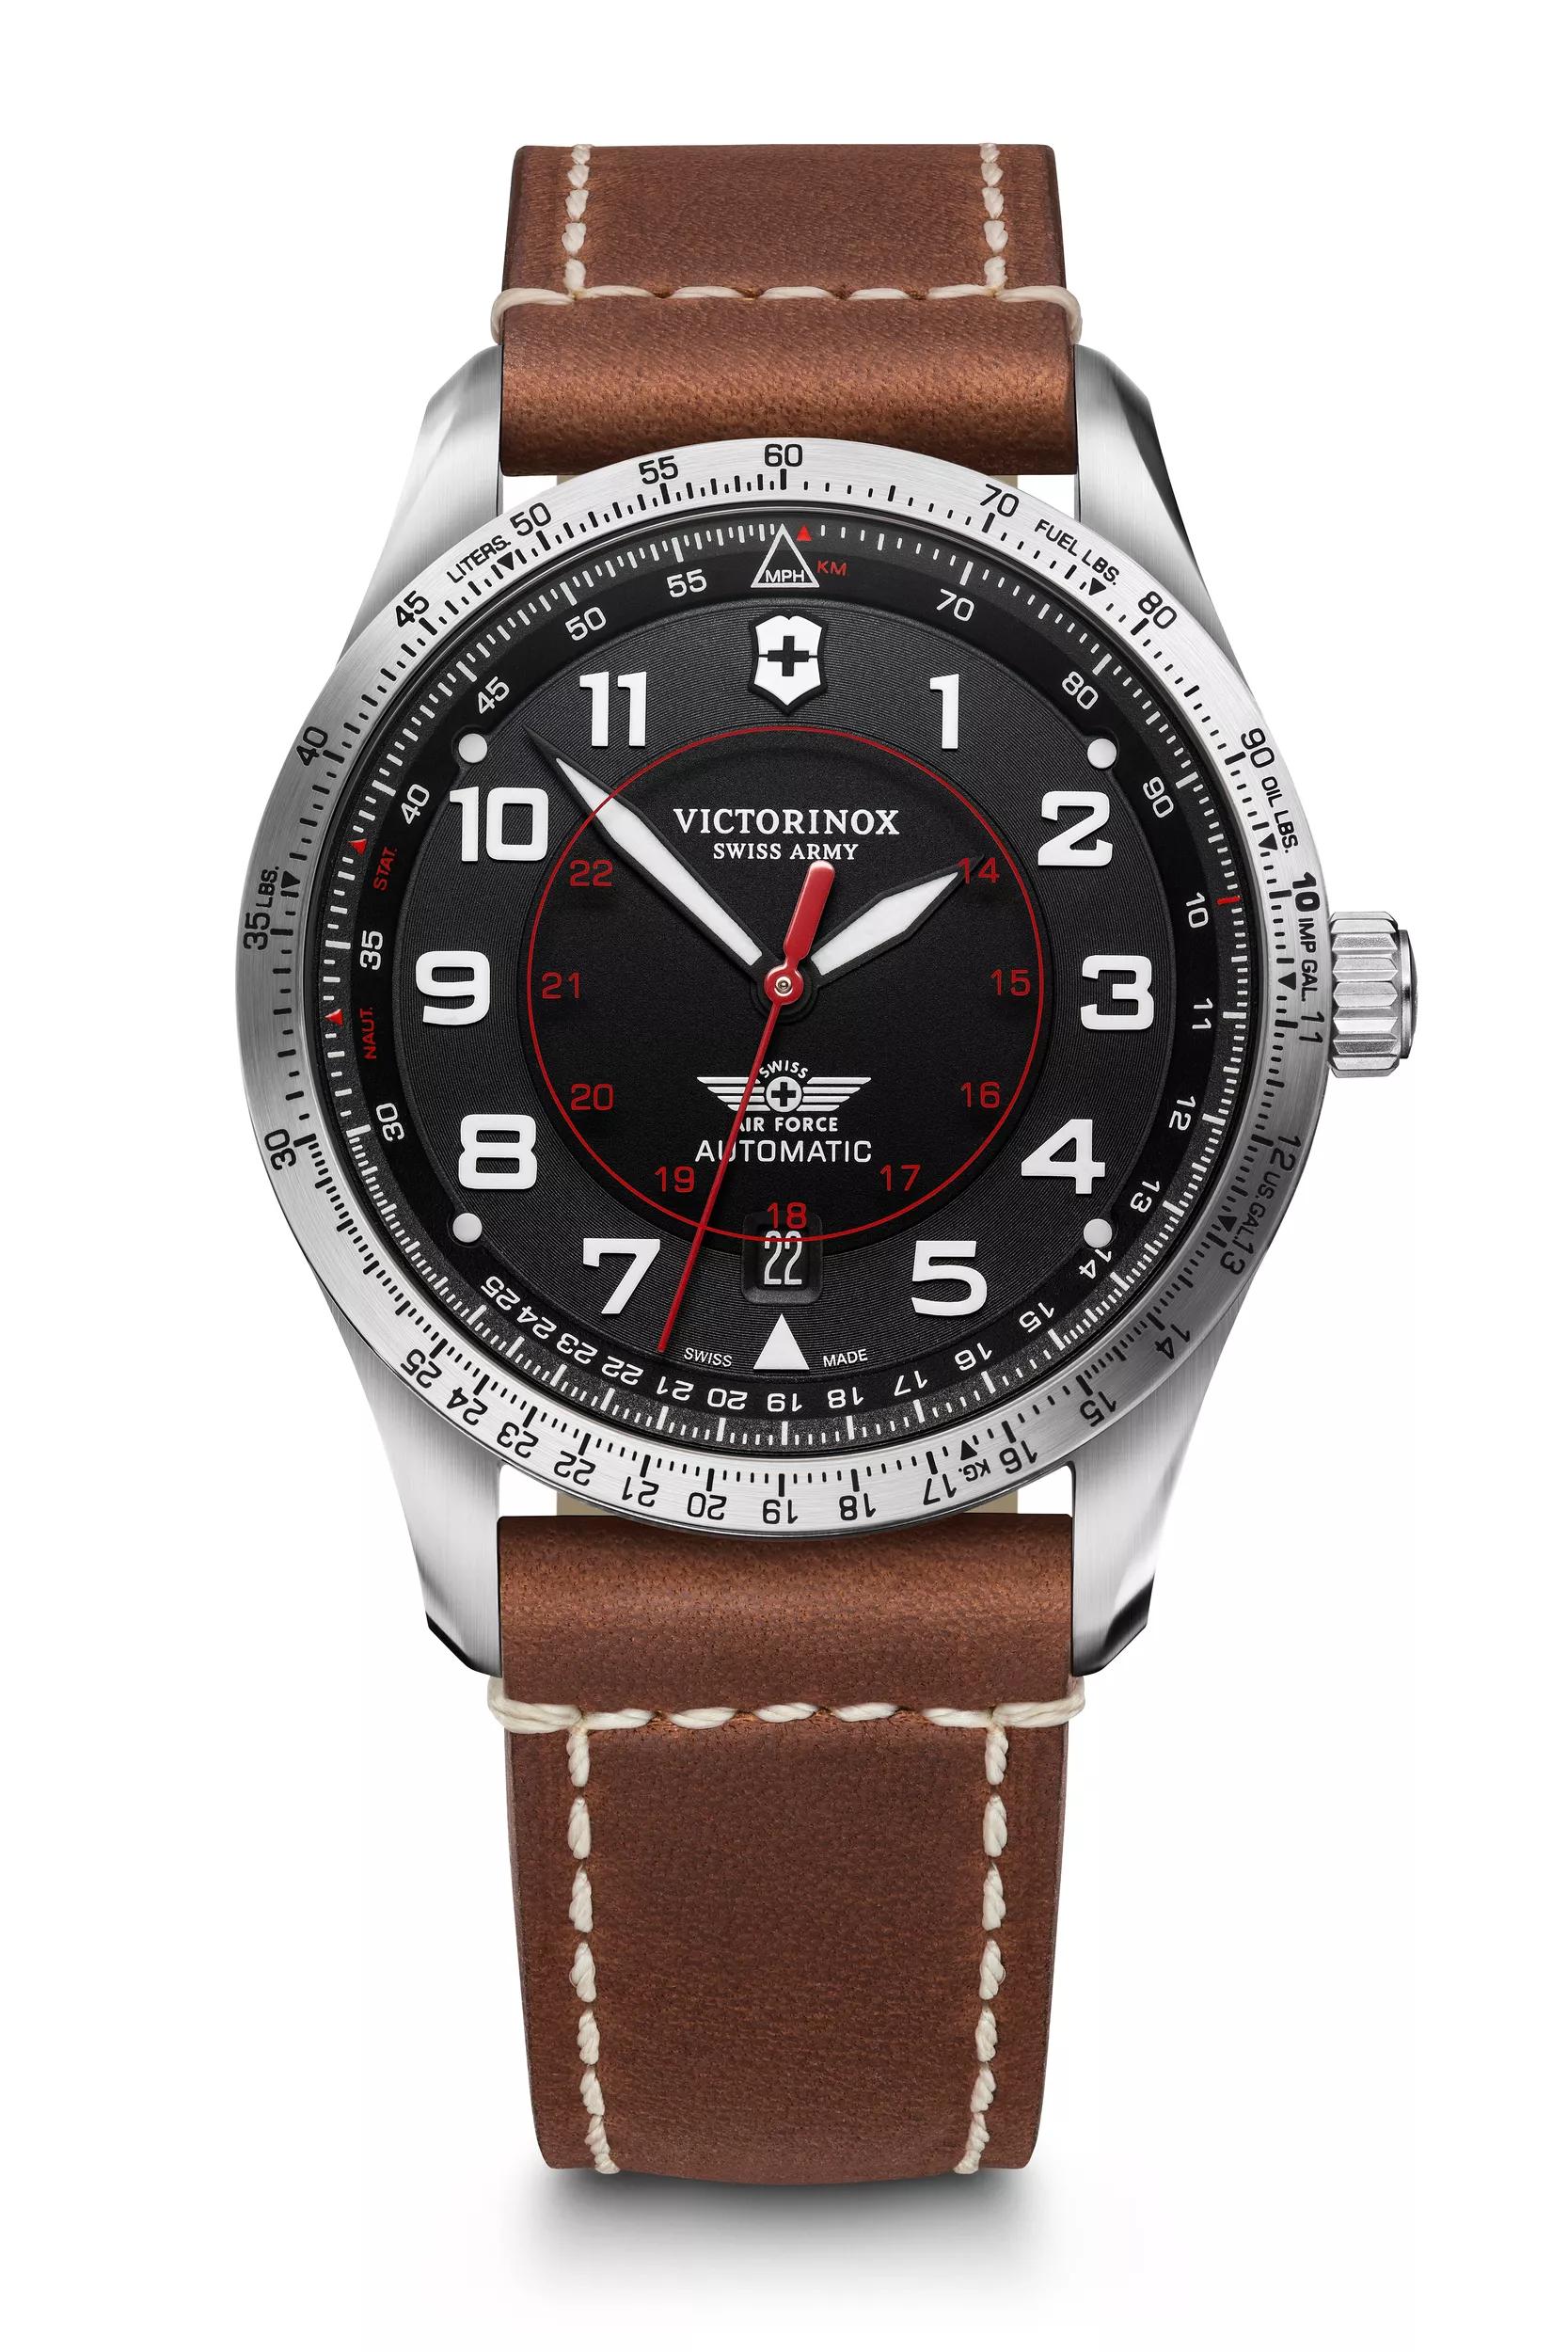 9,996円腕時計 VICTORINOX ビクトリノックス AIRBOSS エアボスマッハ3